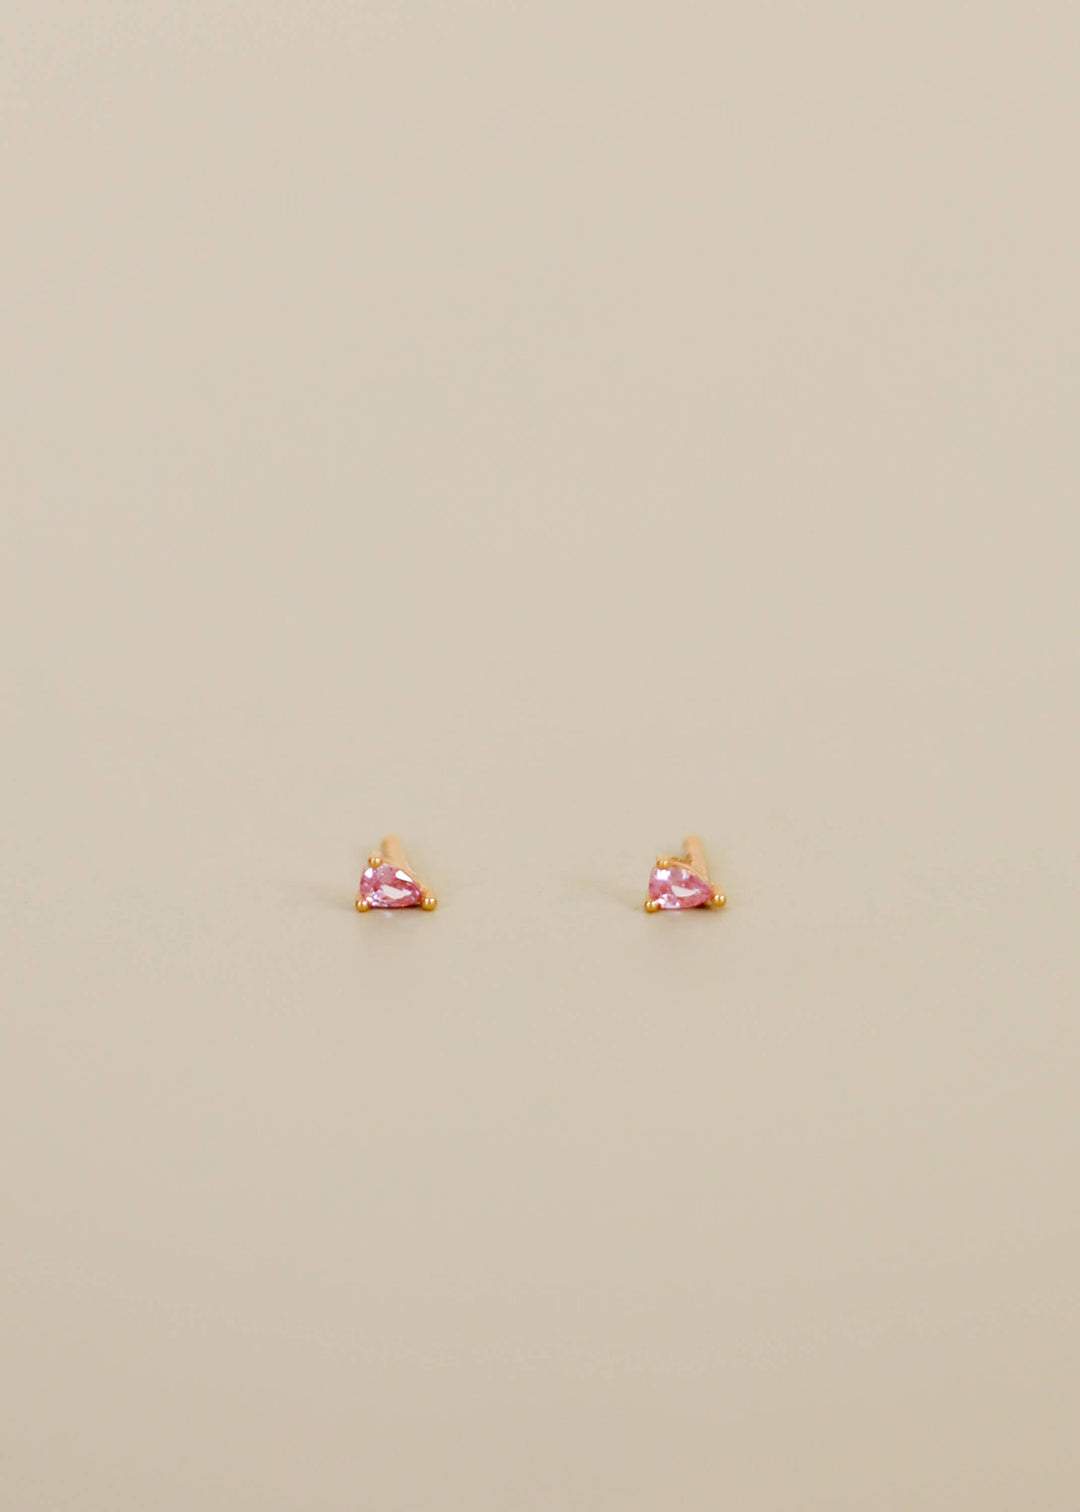 JaxKelly Teardrop - Light Pink - Earring